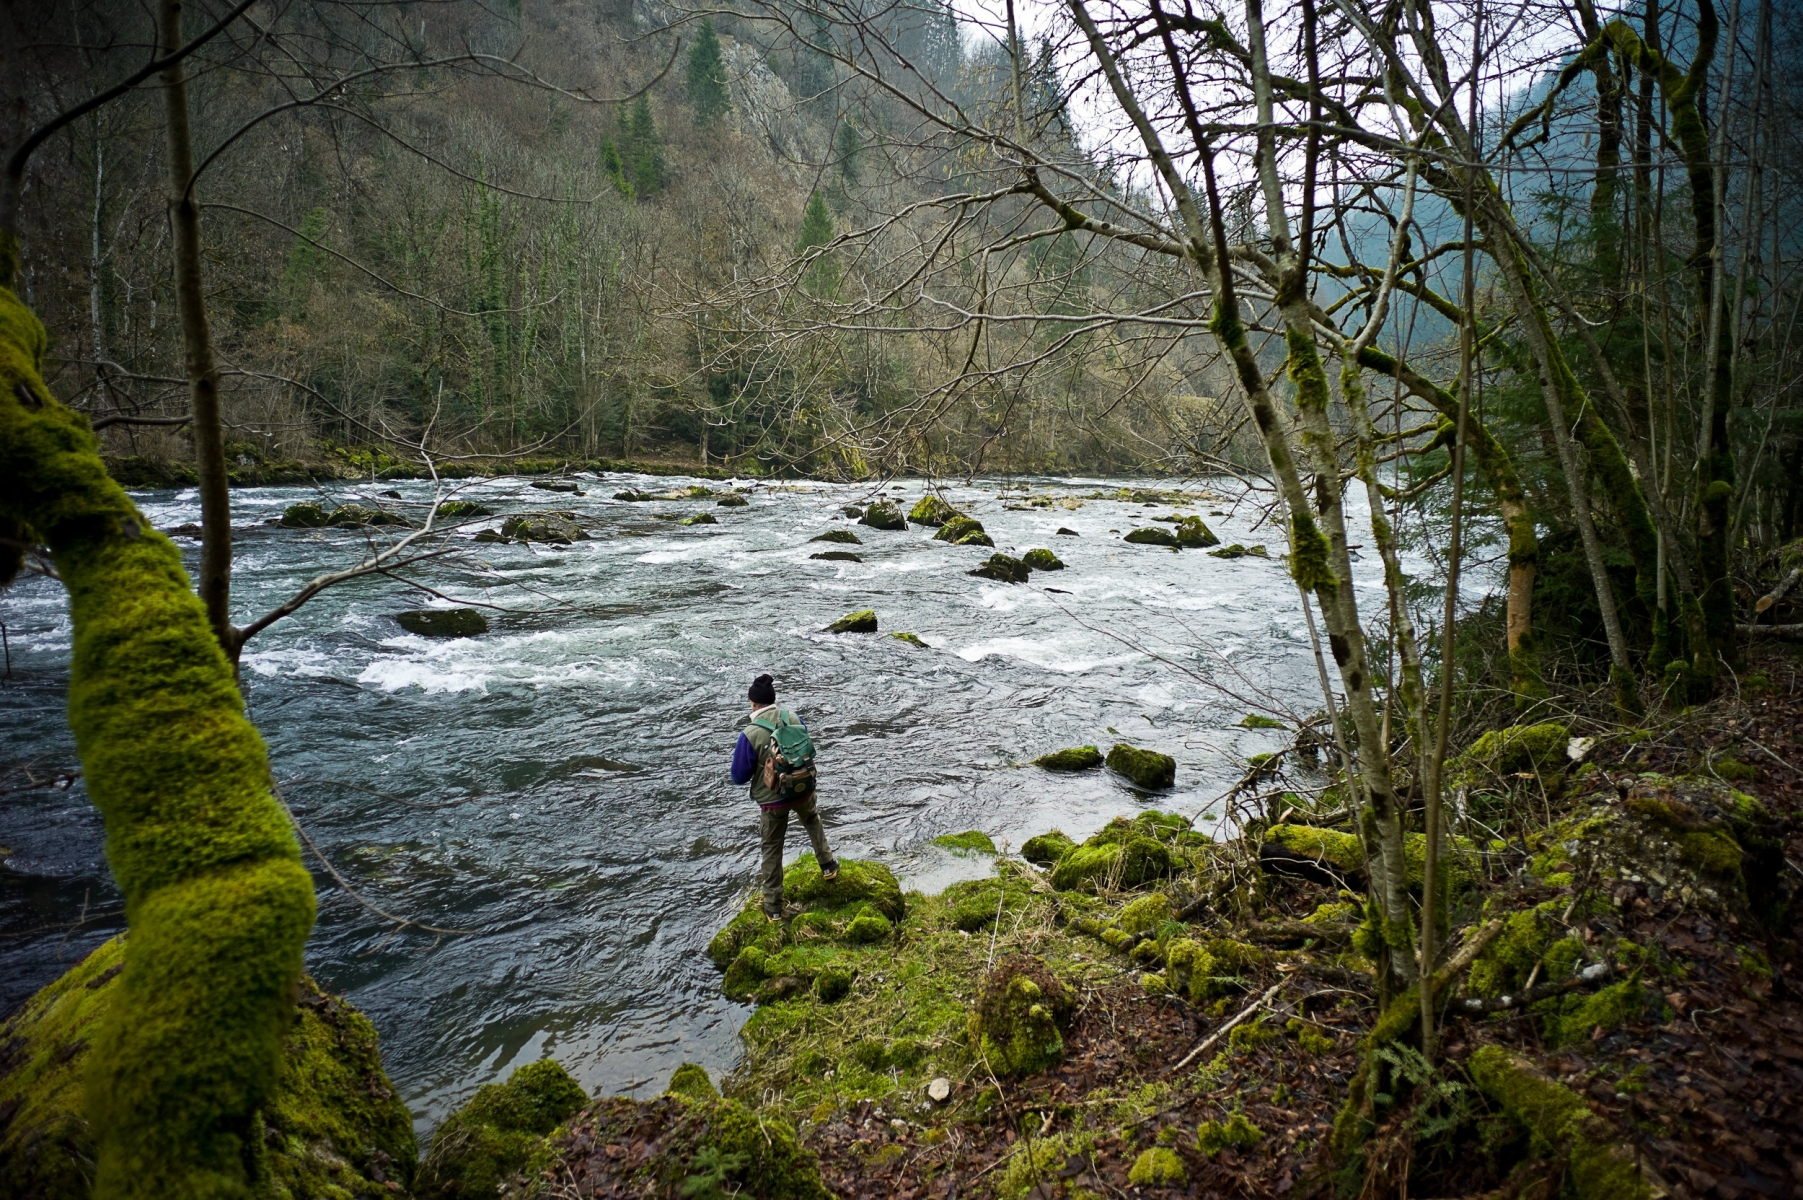 Les pêcheurs doivent rester sur les berges et ne pas pénétrer dans le lit de la rivière pour pratiquer leur activité sur le Doubs.